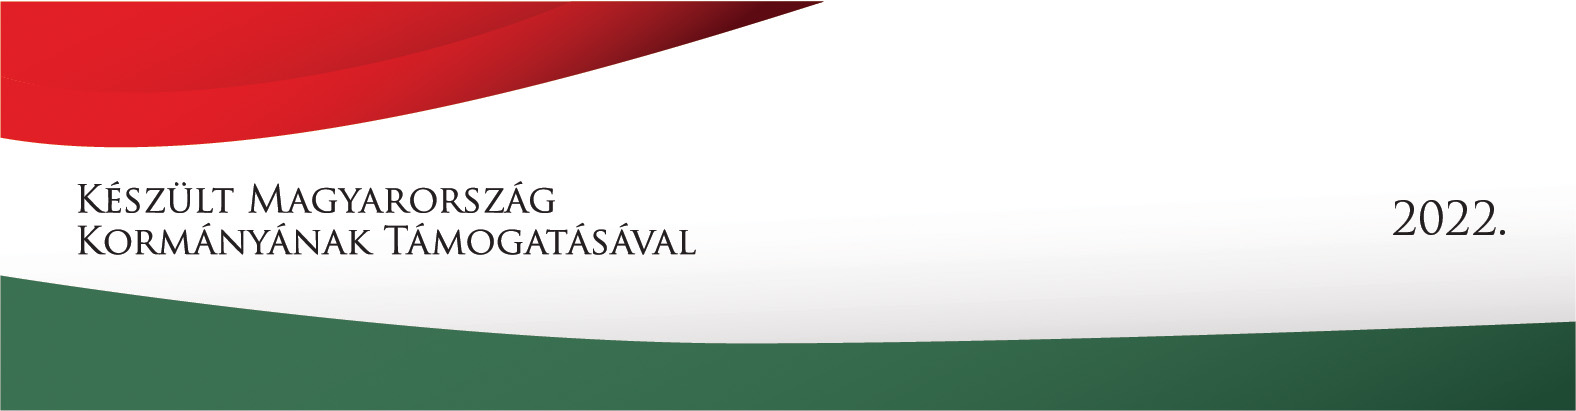 Készült Magyarország Kormányának Támogatásával 2022 logó